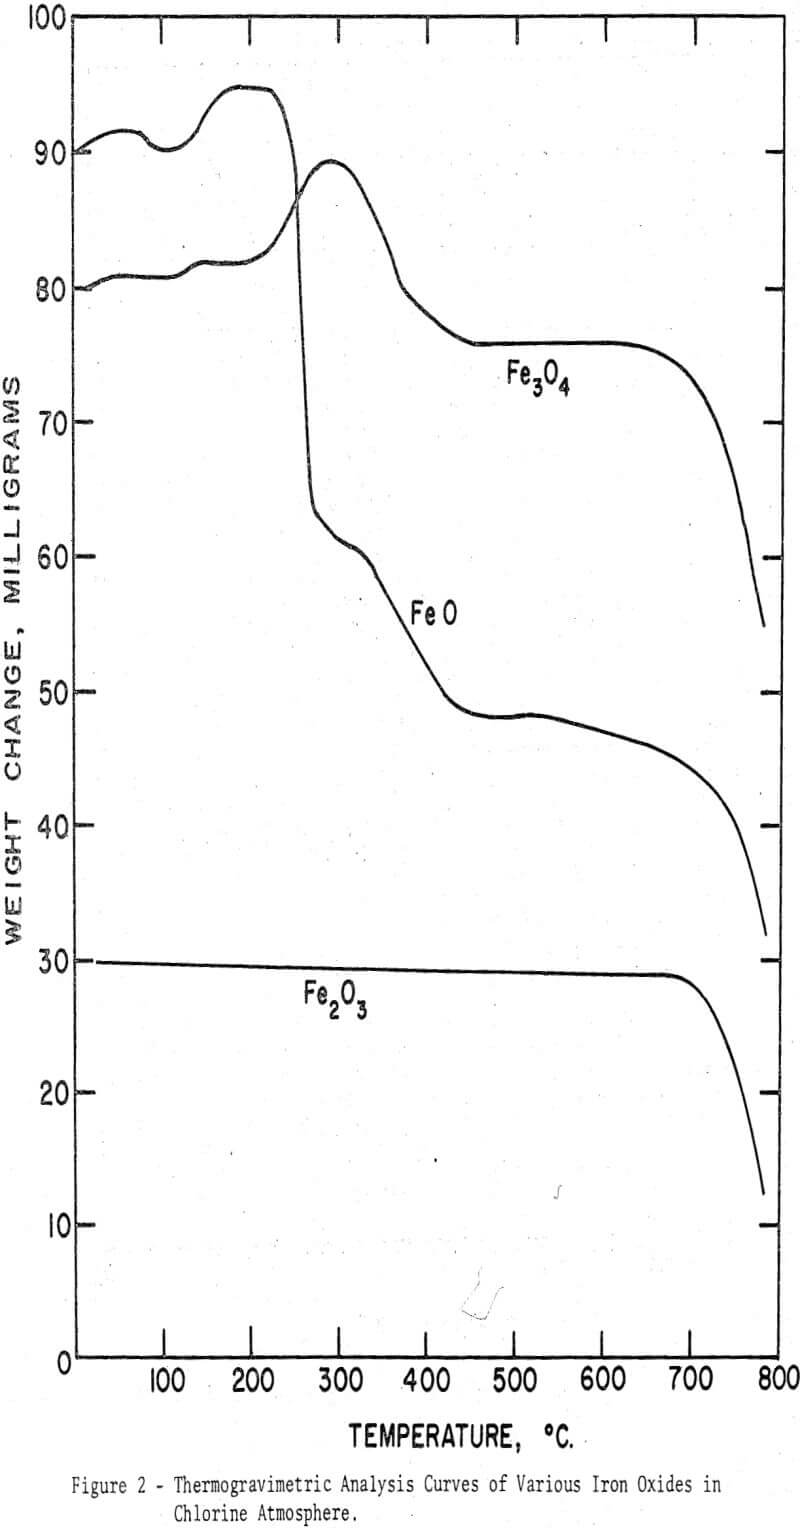 iron-ores thermogravimetric analysis curves